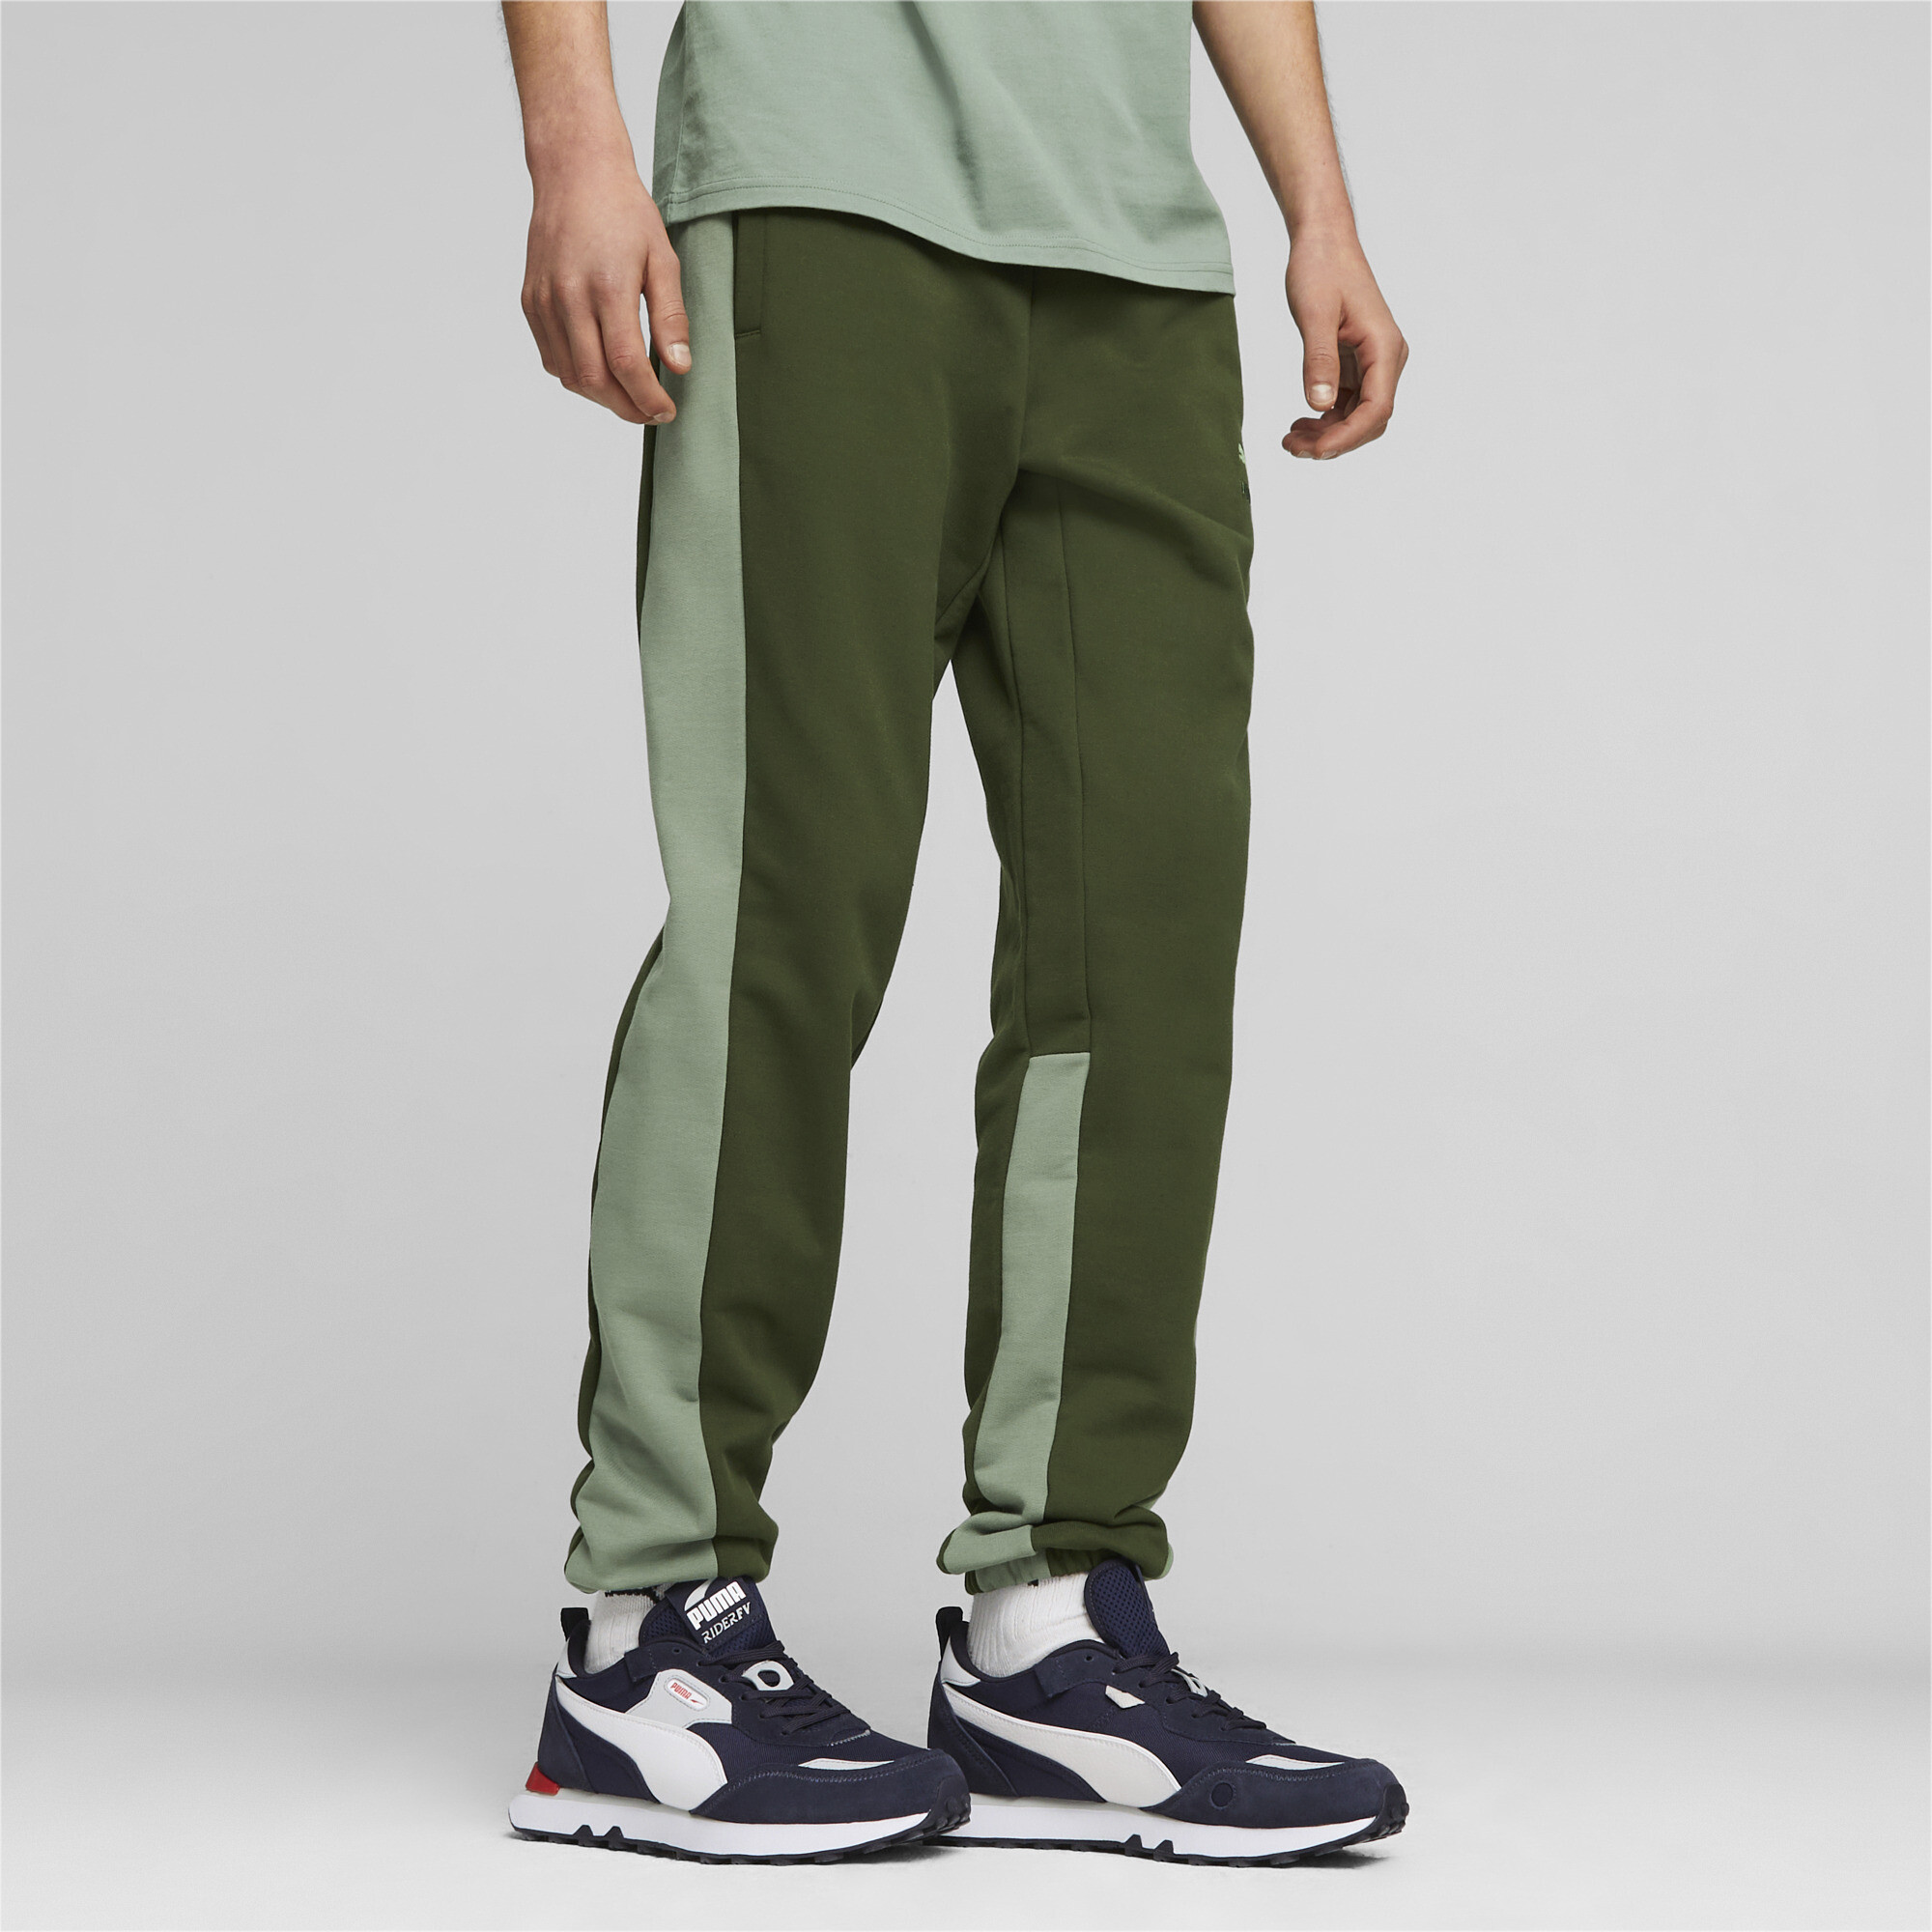 Men's Puma Classics Block's Sweatpants, Green, Size M, Clothing